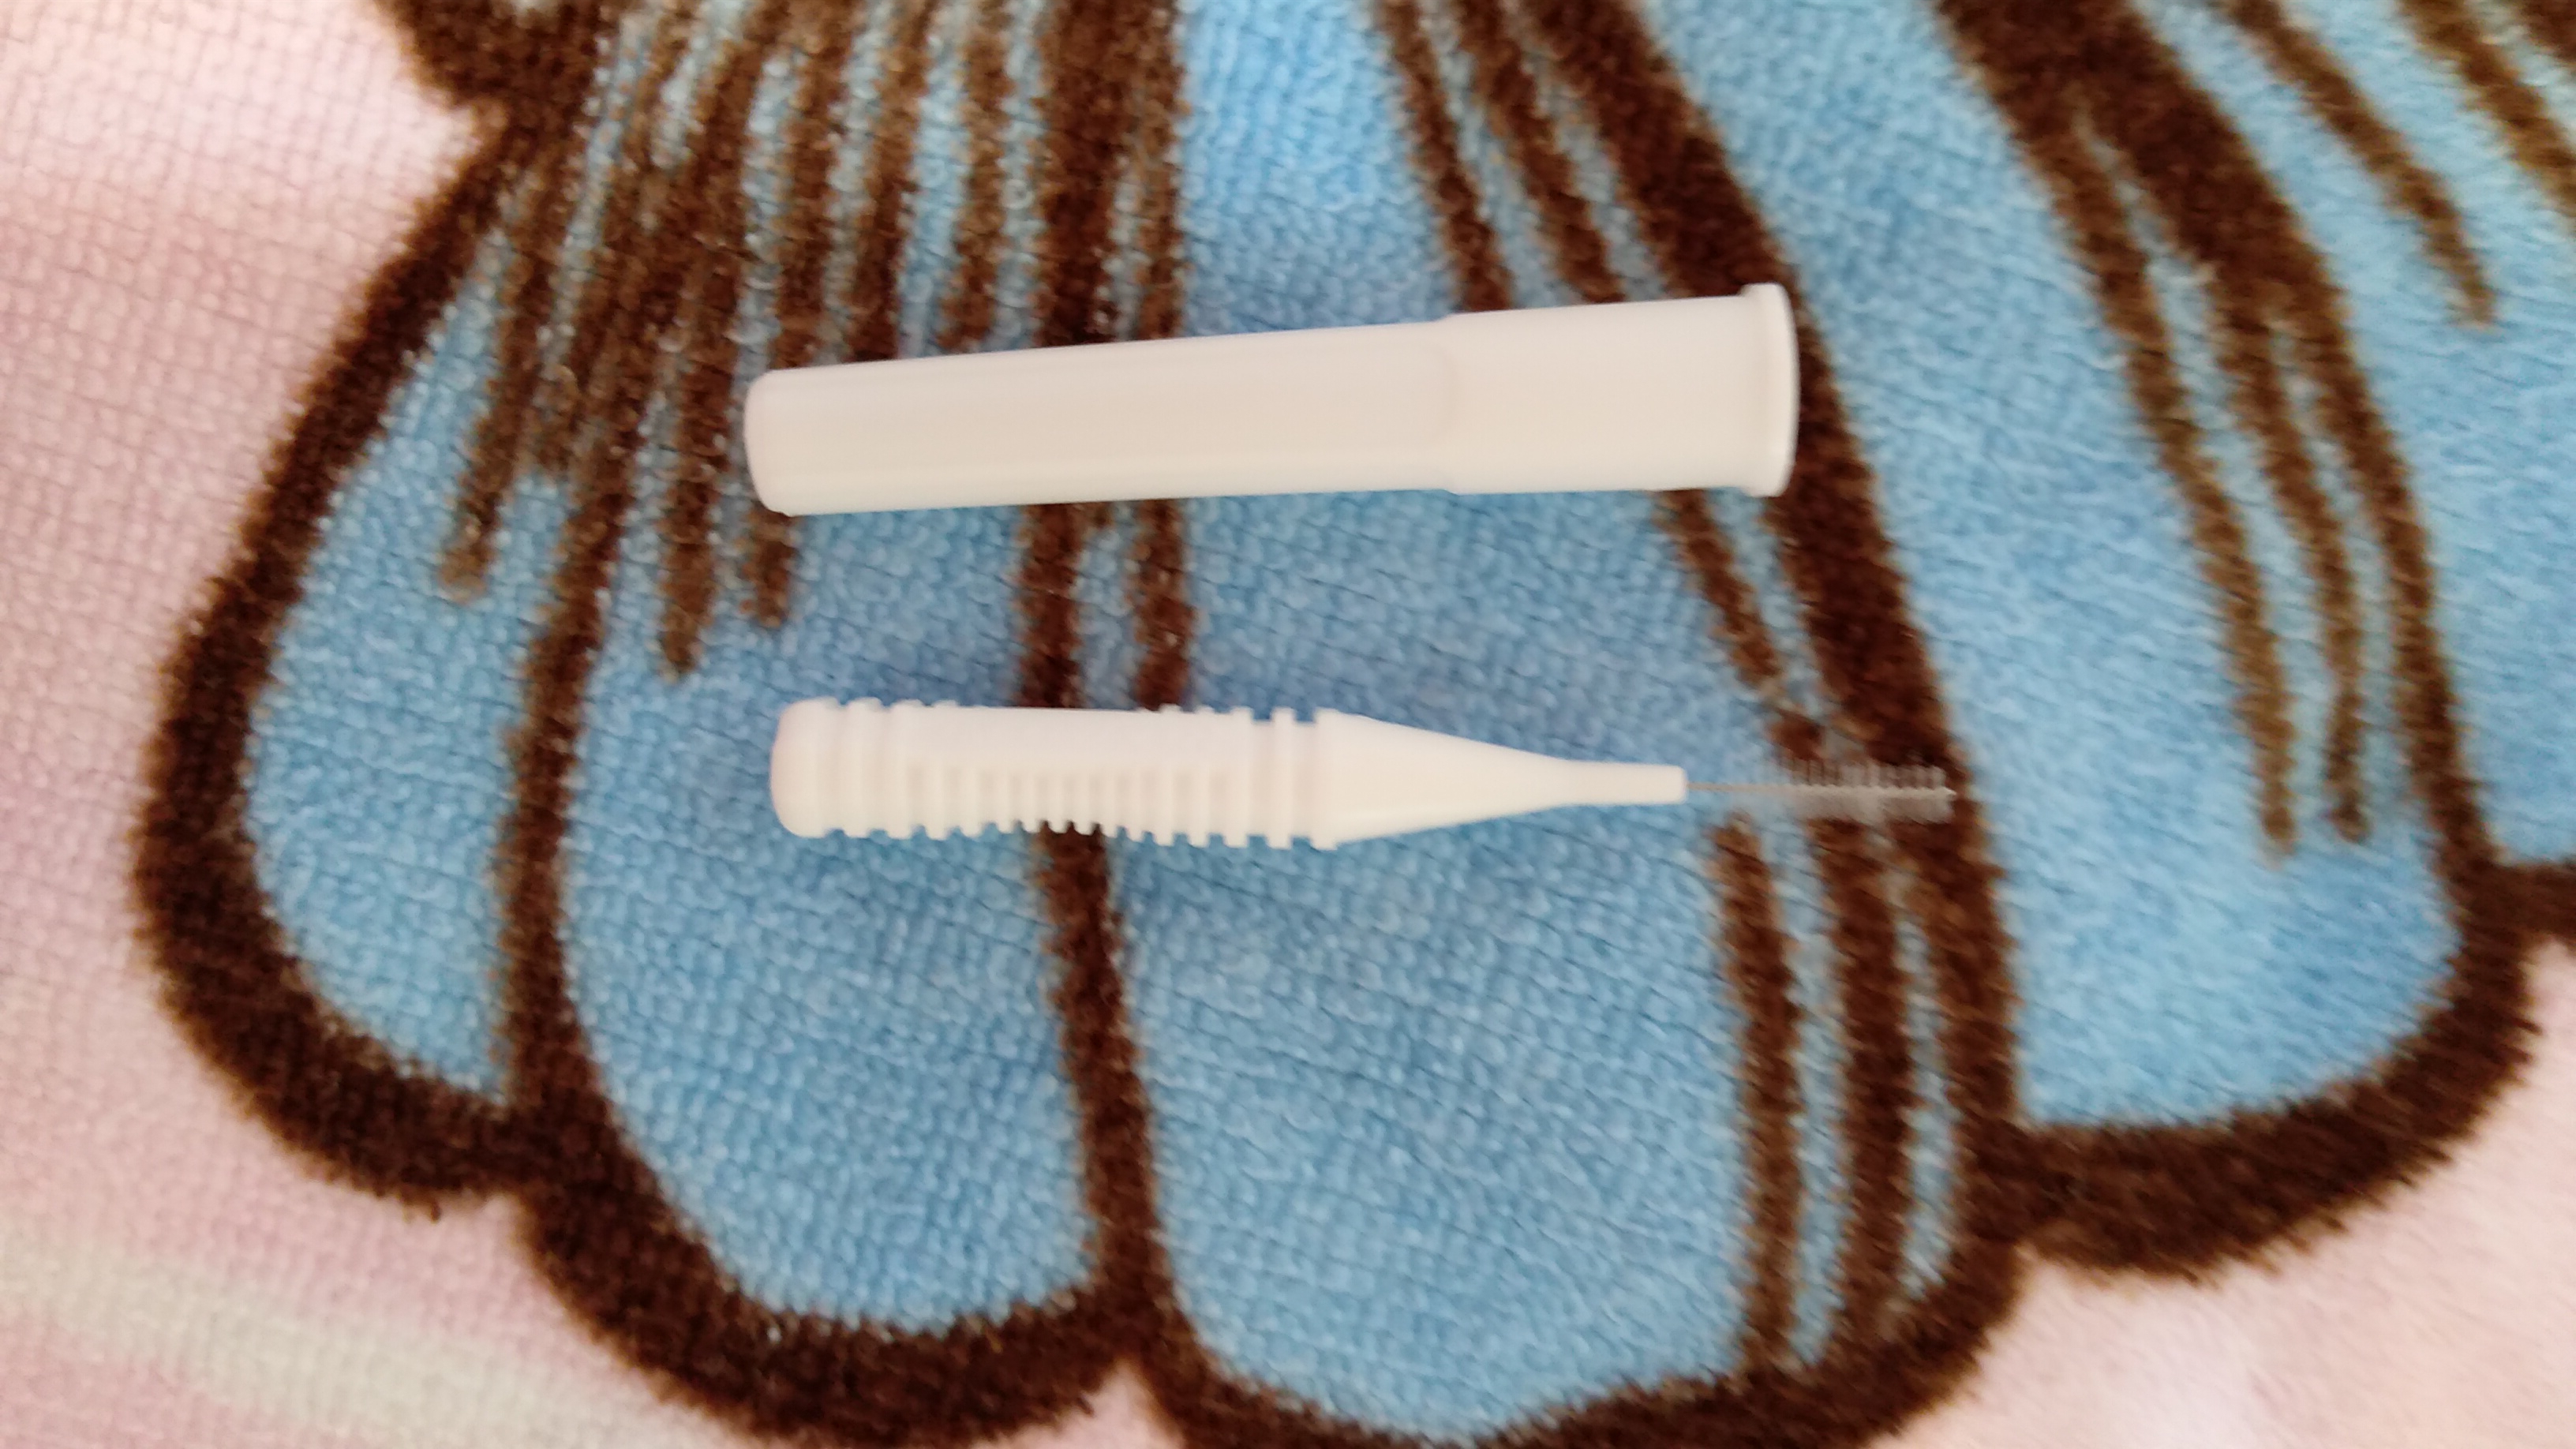 DENTALPRO(デンタルプロ) 歯間ブラシ I字型を使ったpurantarさんのクチコミ画像1